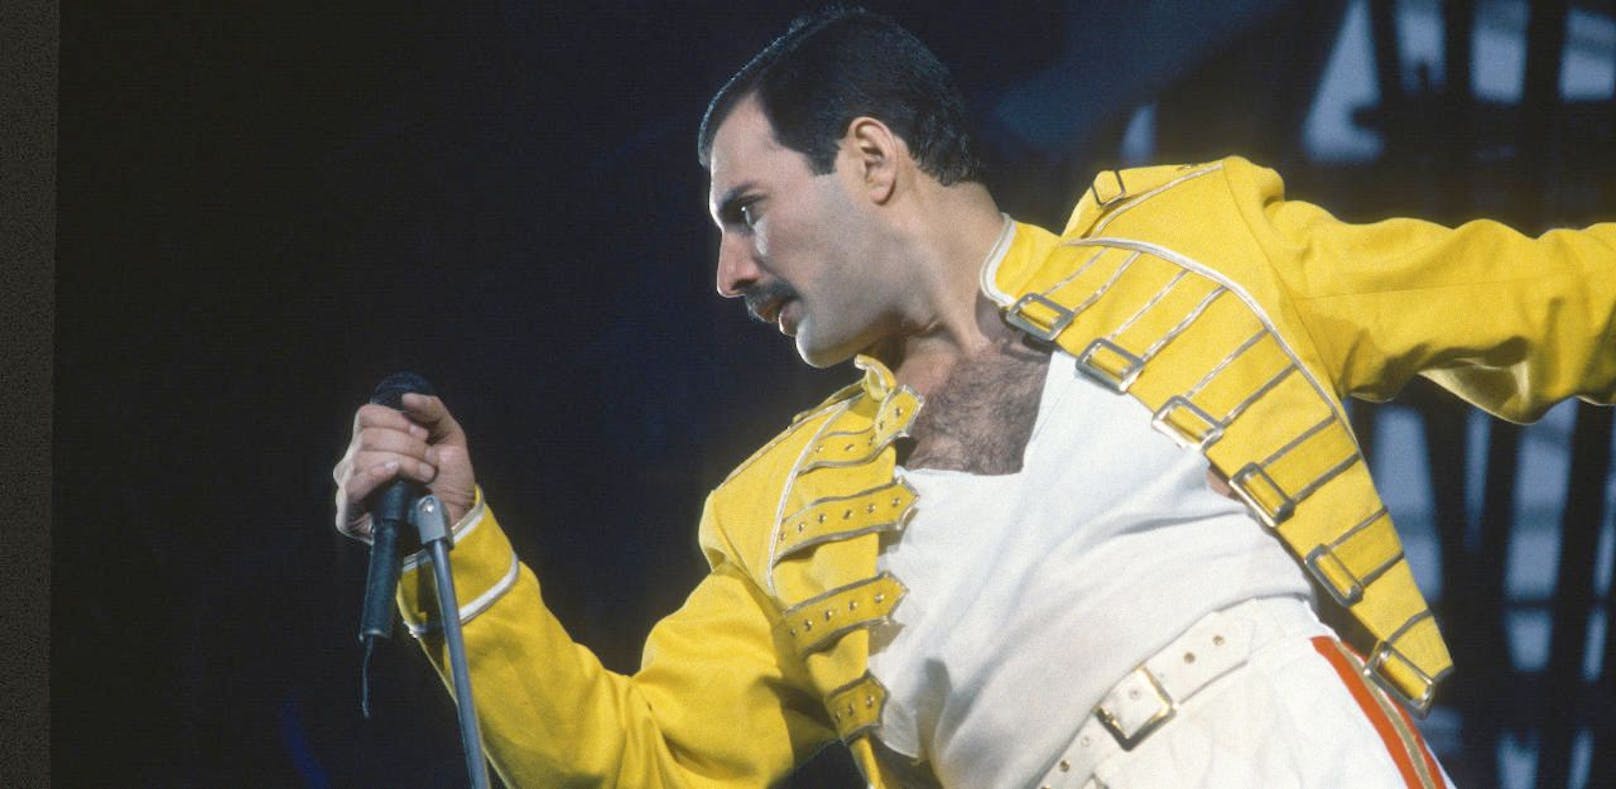 Queen veröffentlichen "neuen" Song mit Freddie Mercury